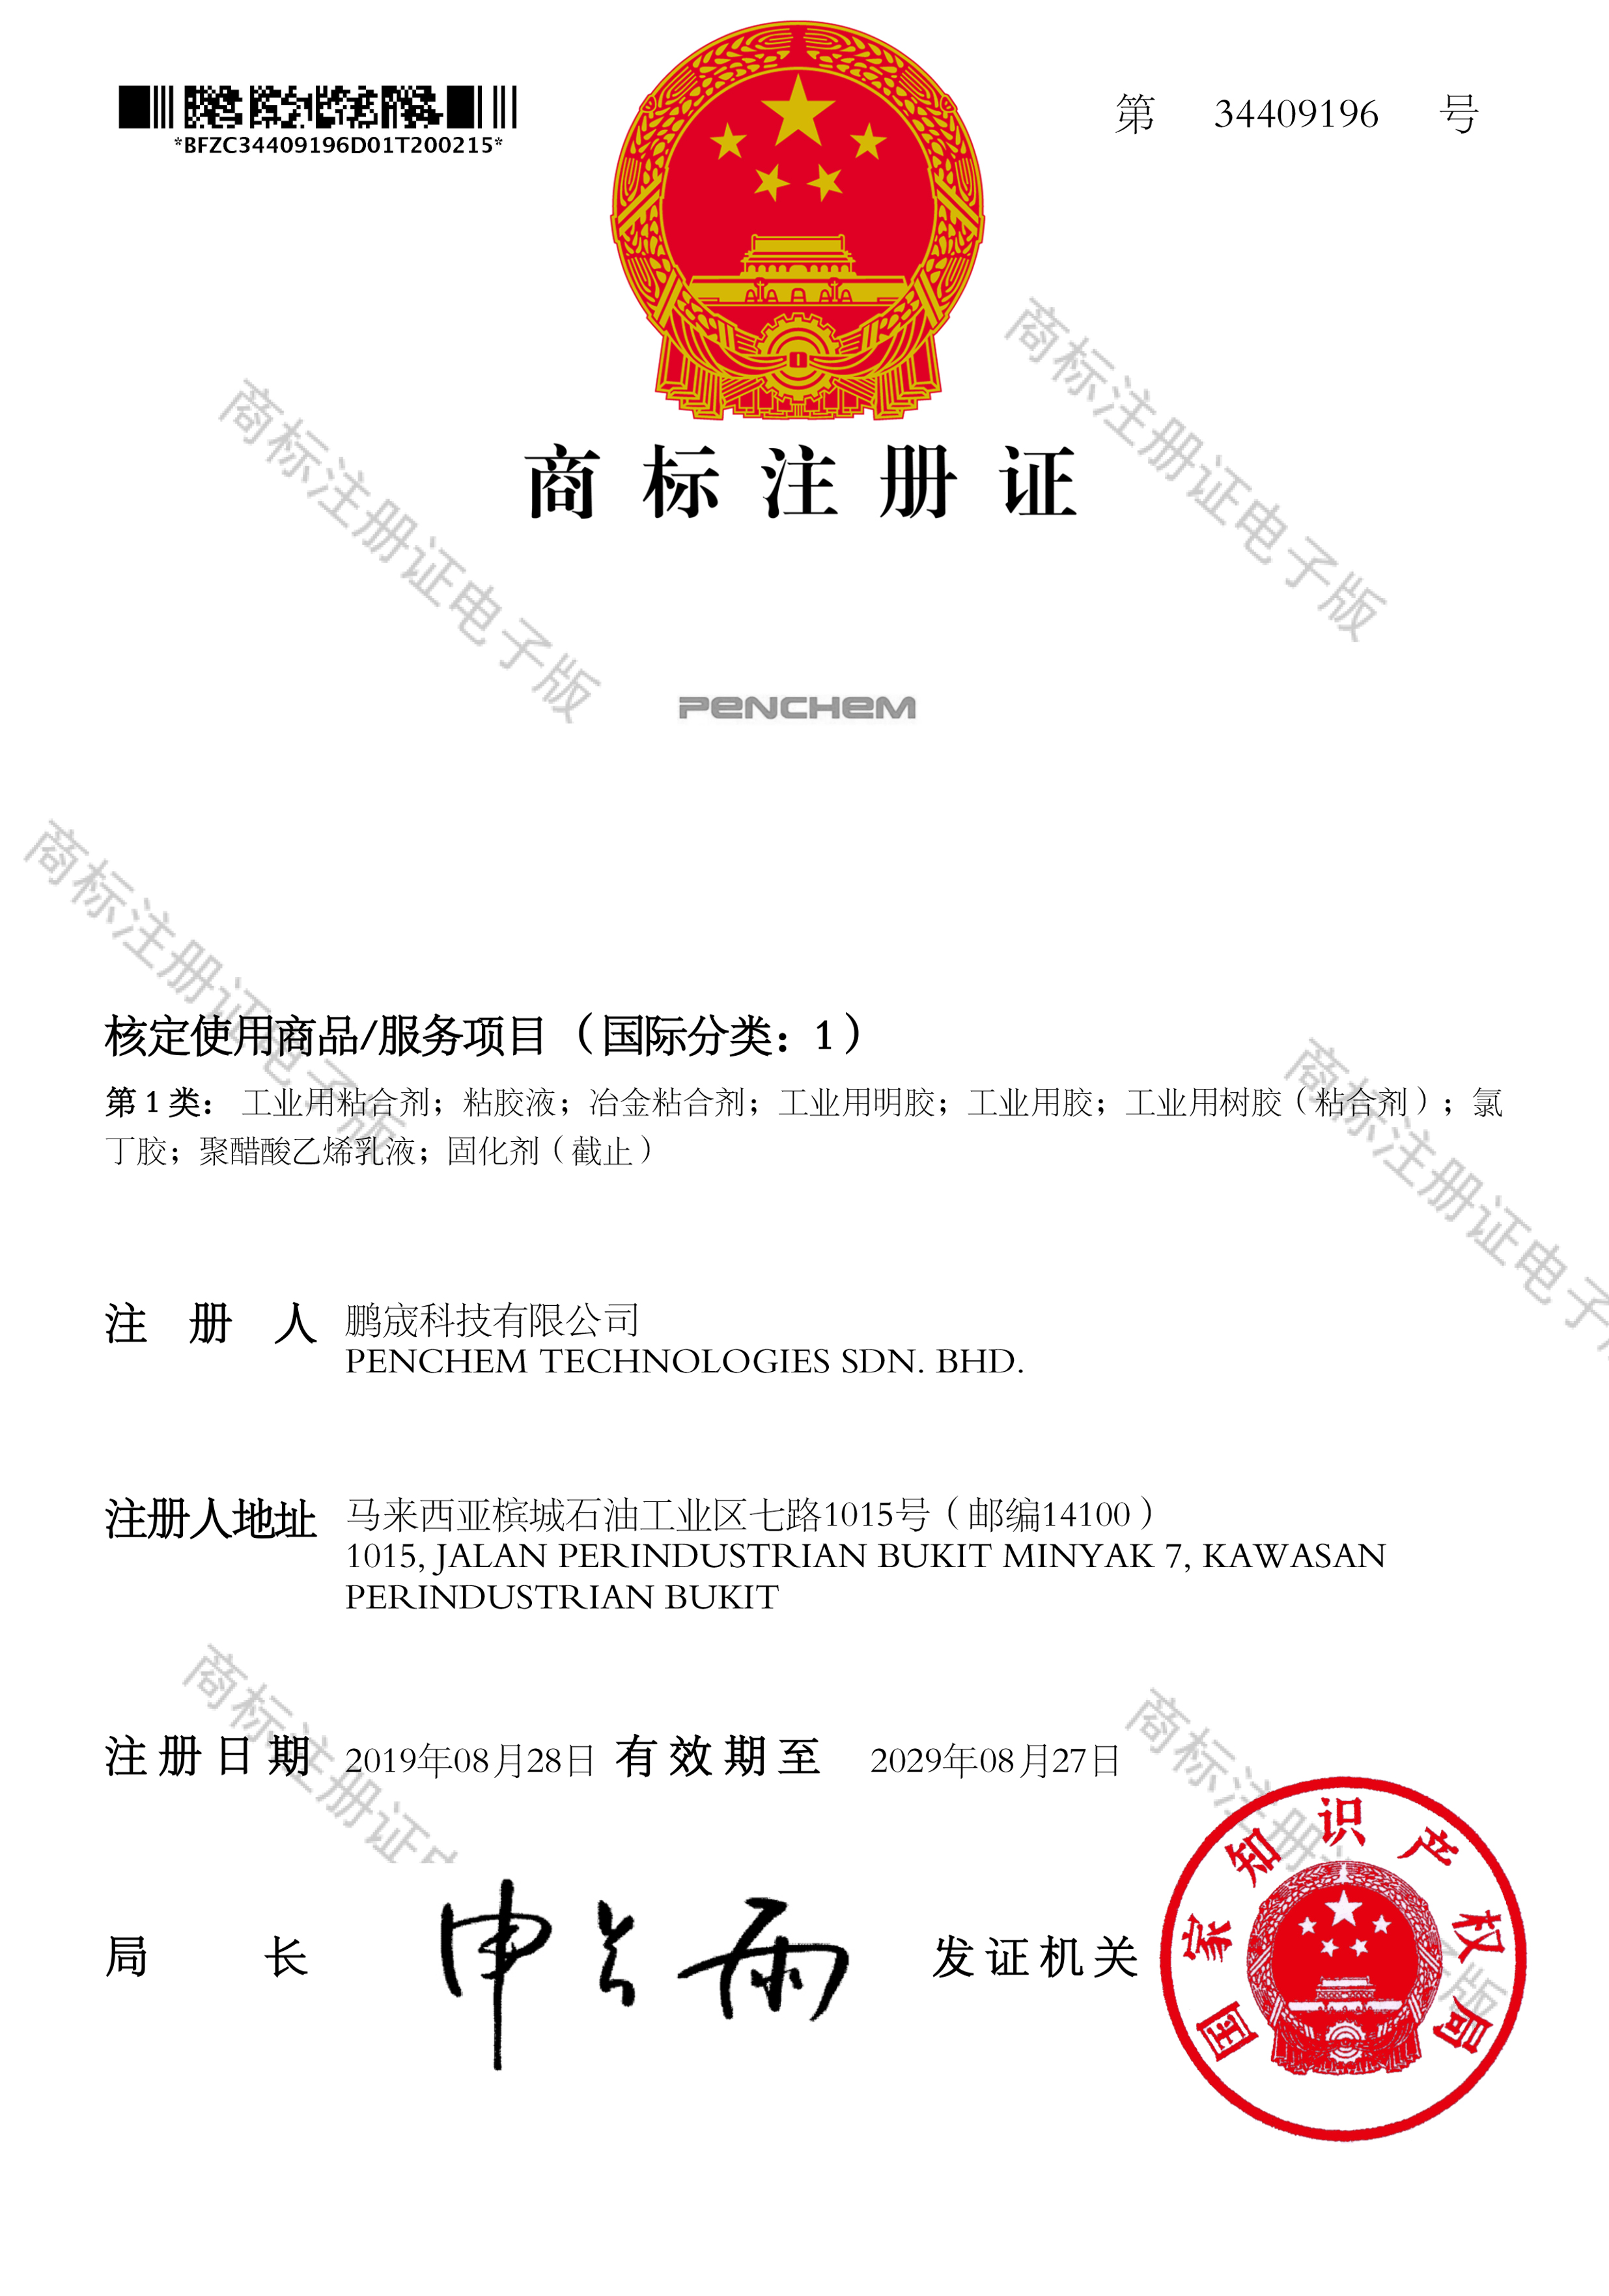 中国商标注册证： 国际分类1